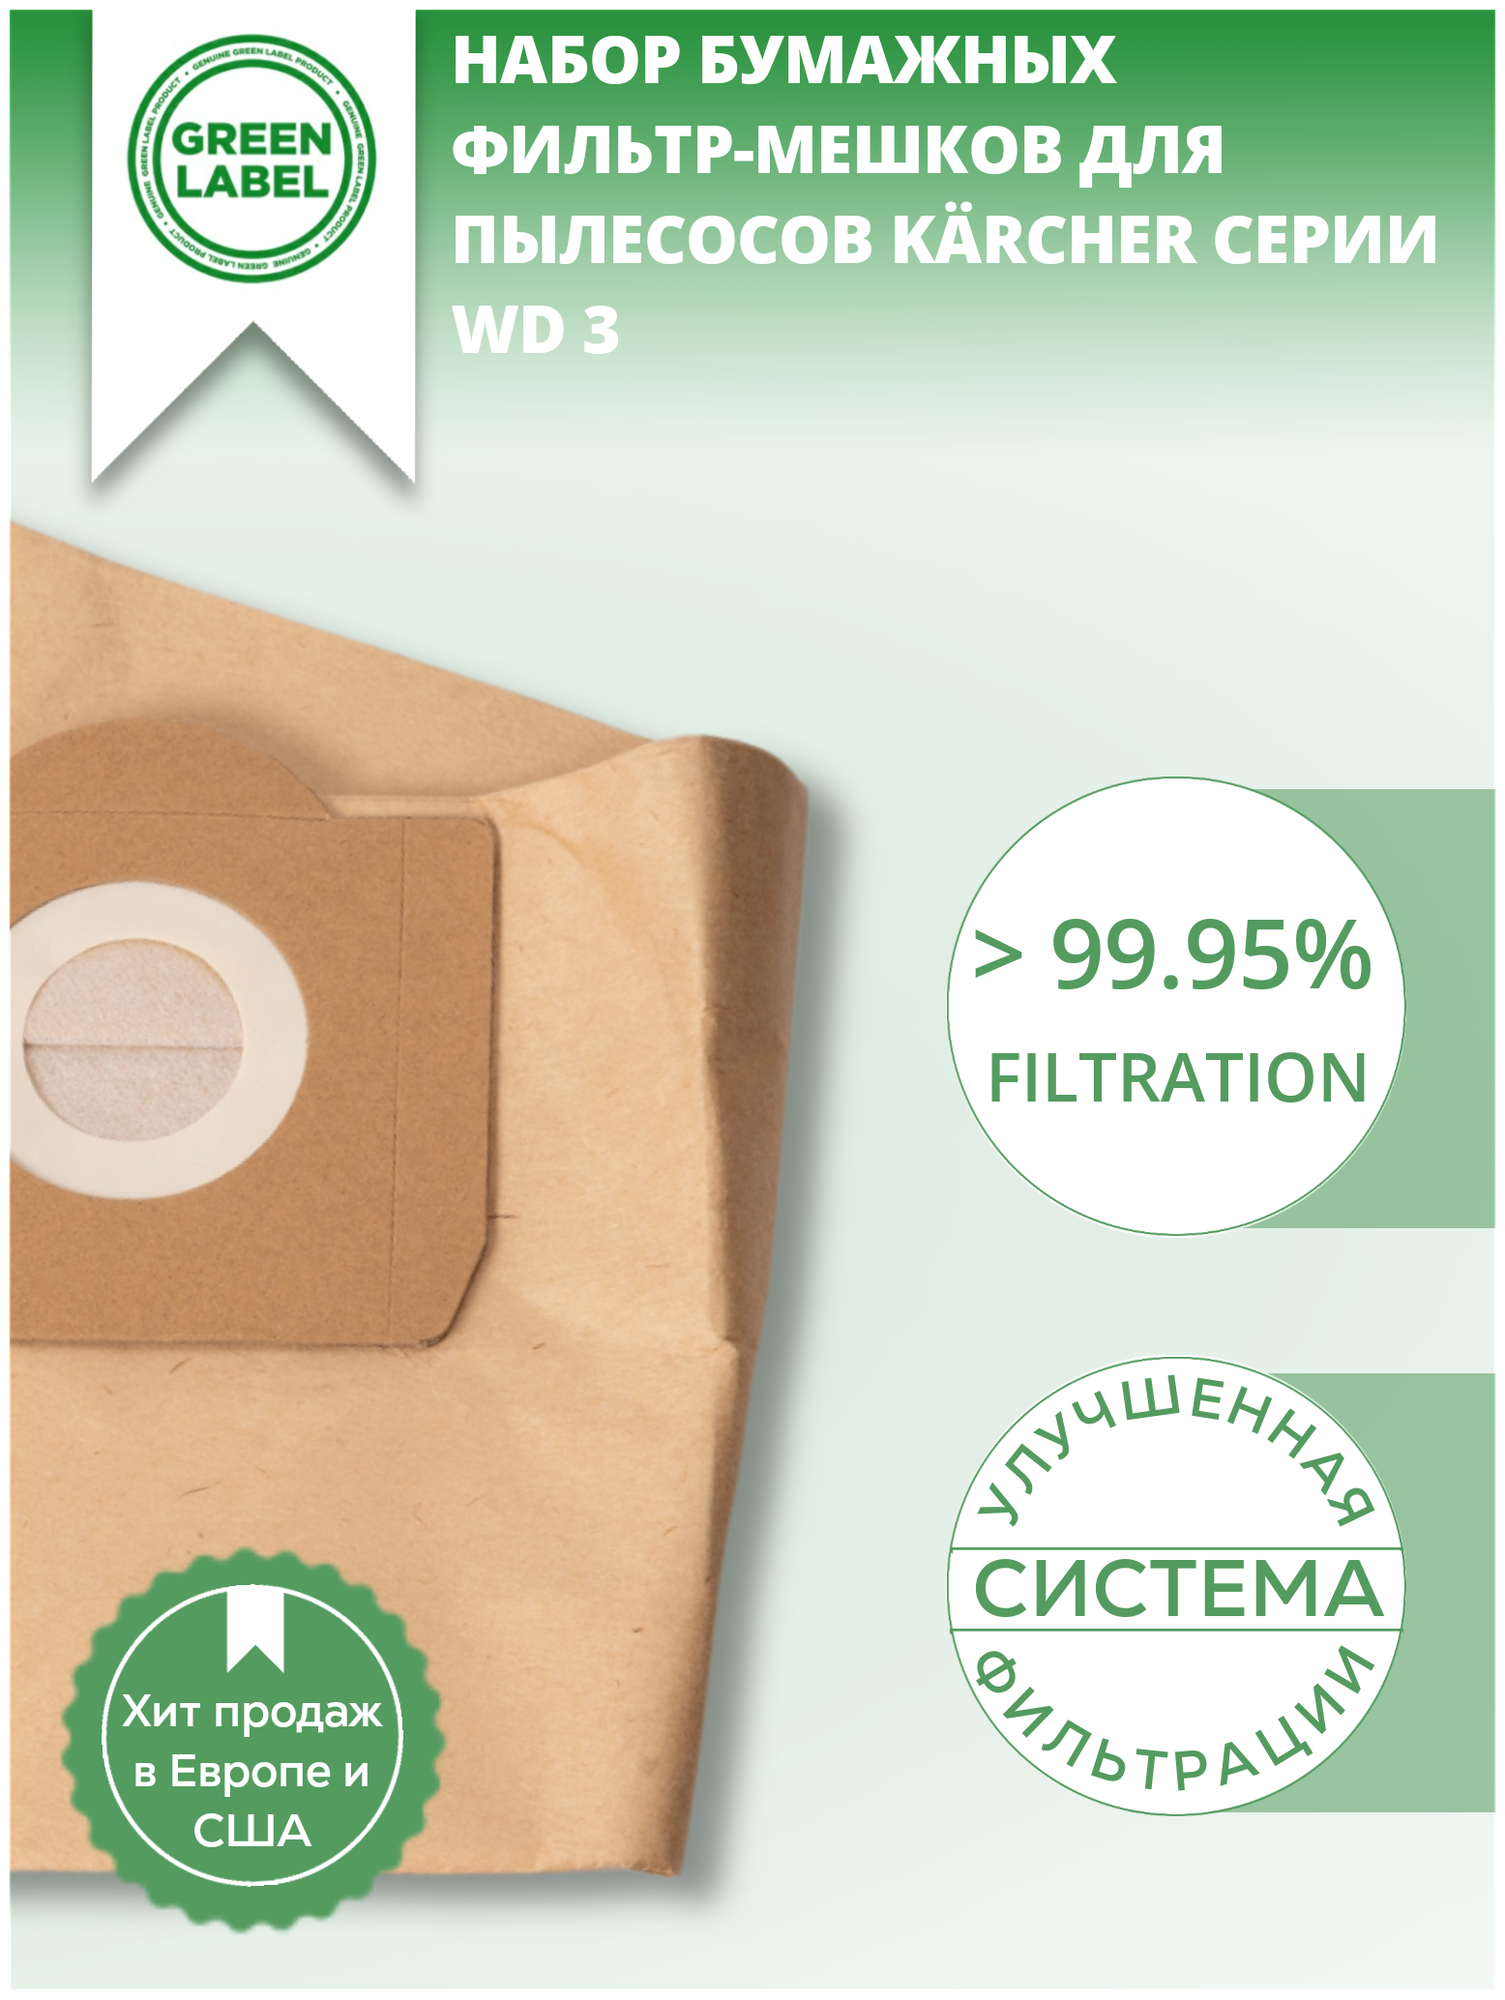 Green Label / Набор бумажных фильтр мешков пылесборников 6959 1300 для пылесосов Karcher серии WD 3 SE 4001 SE 4002